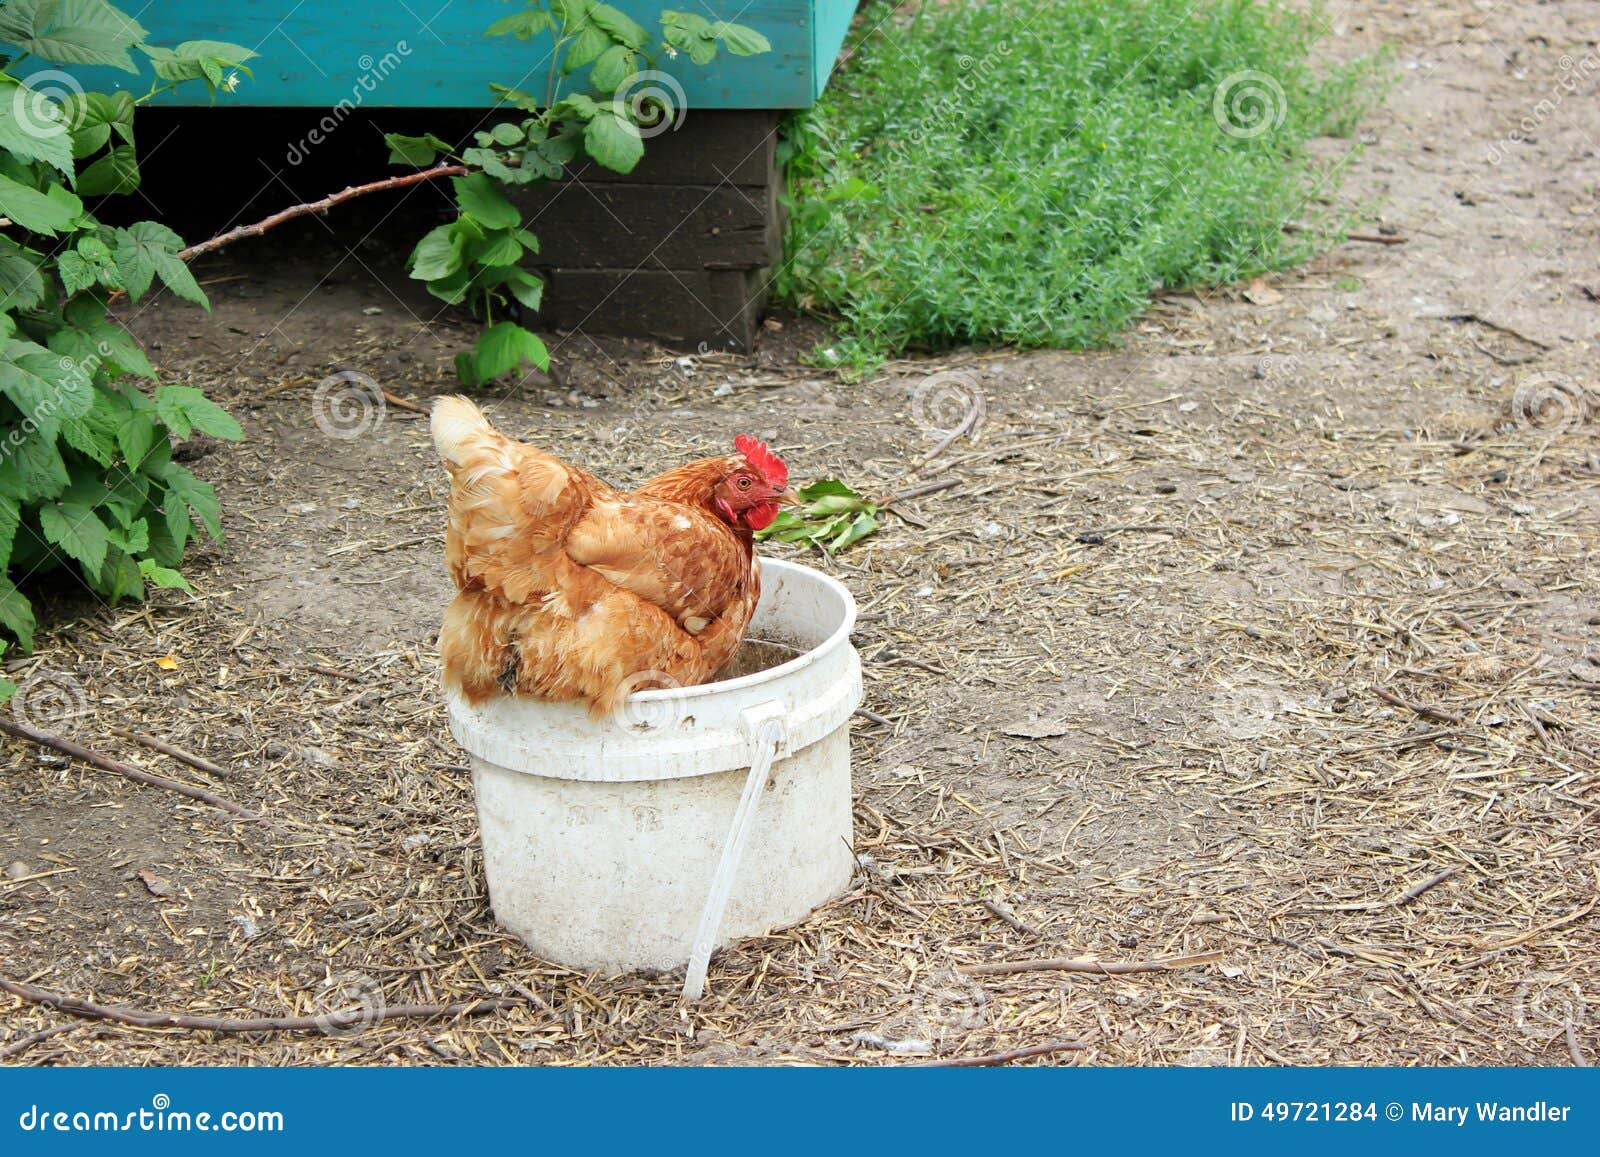 Chicken sitting in a water bucket in a chicken coop.